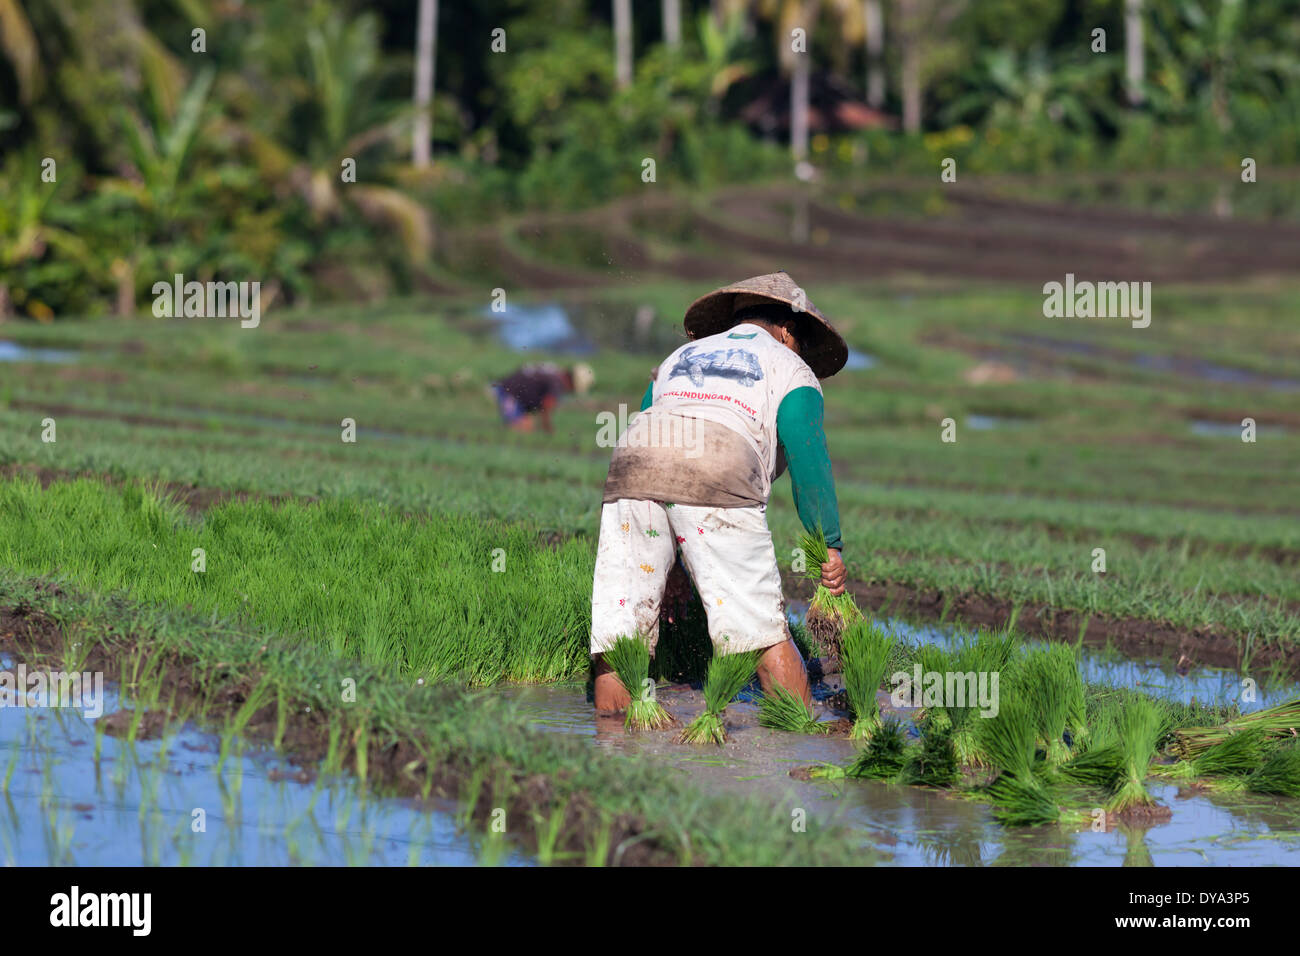 Donna di piantare il riso sul campo di riso nella regione di Antosari e Belimbing (probabilmente più vicino a Antosari), Bali, Indonesia Foto Stock